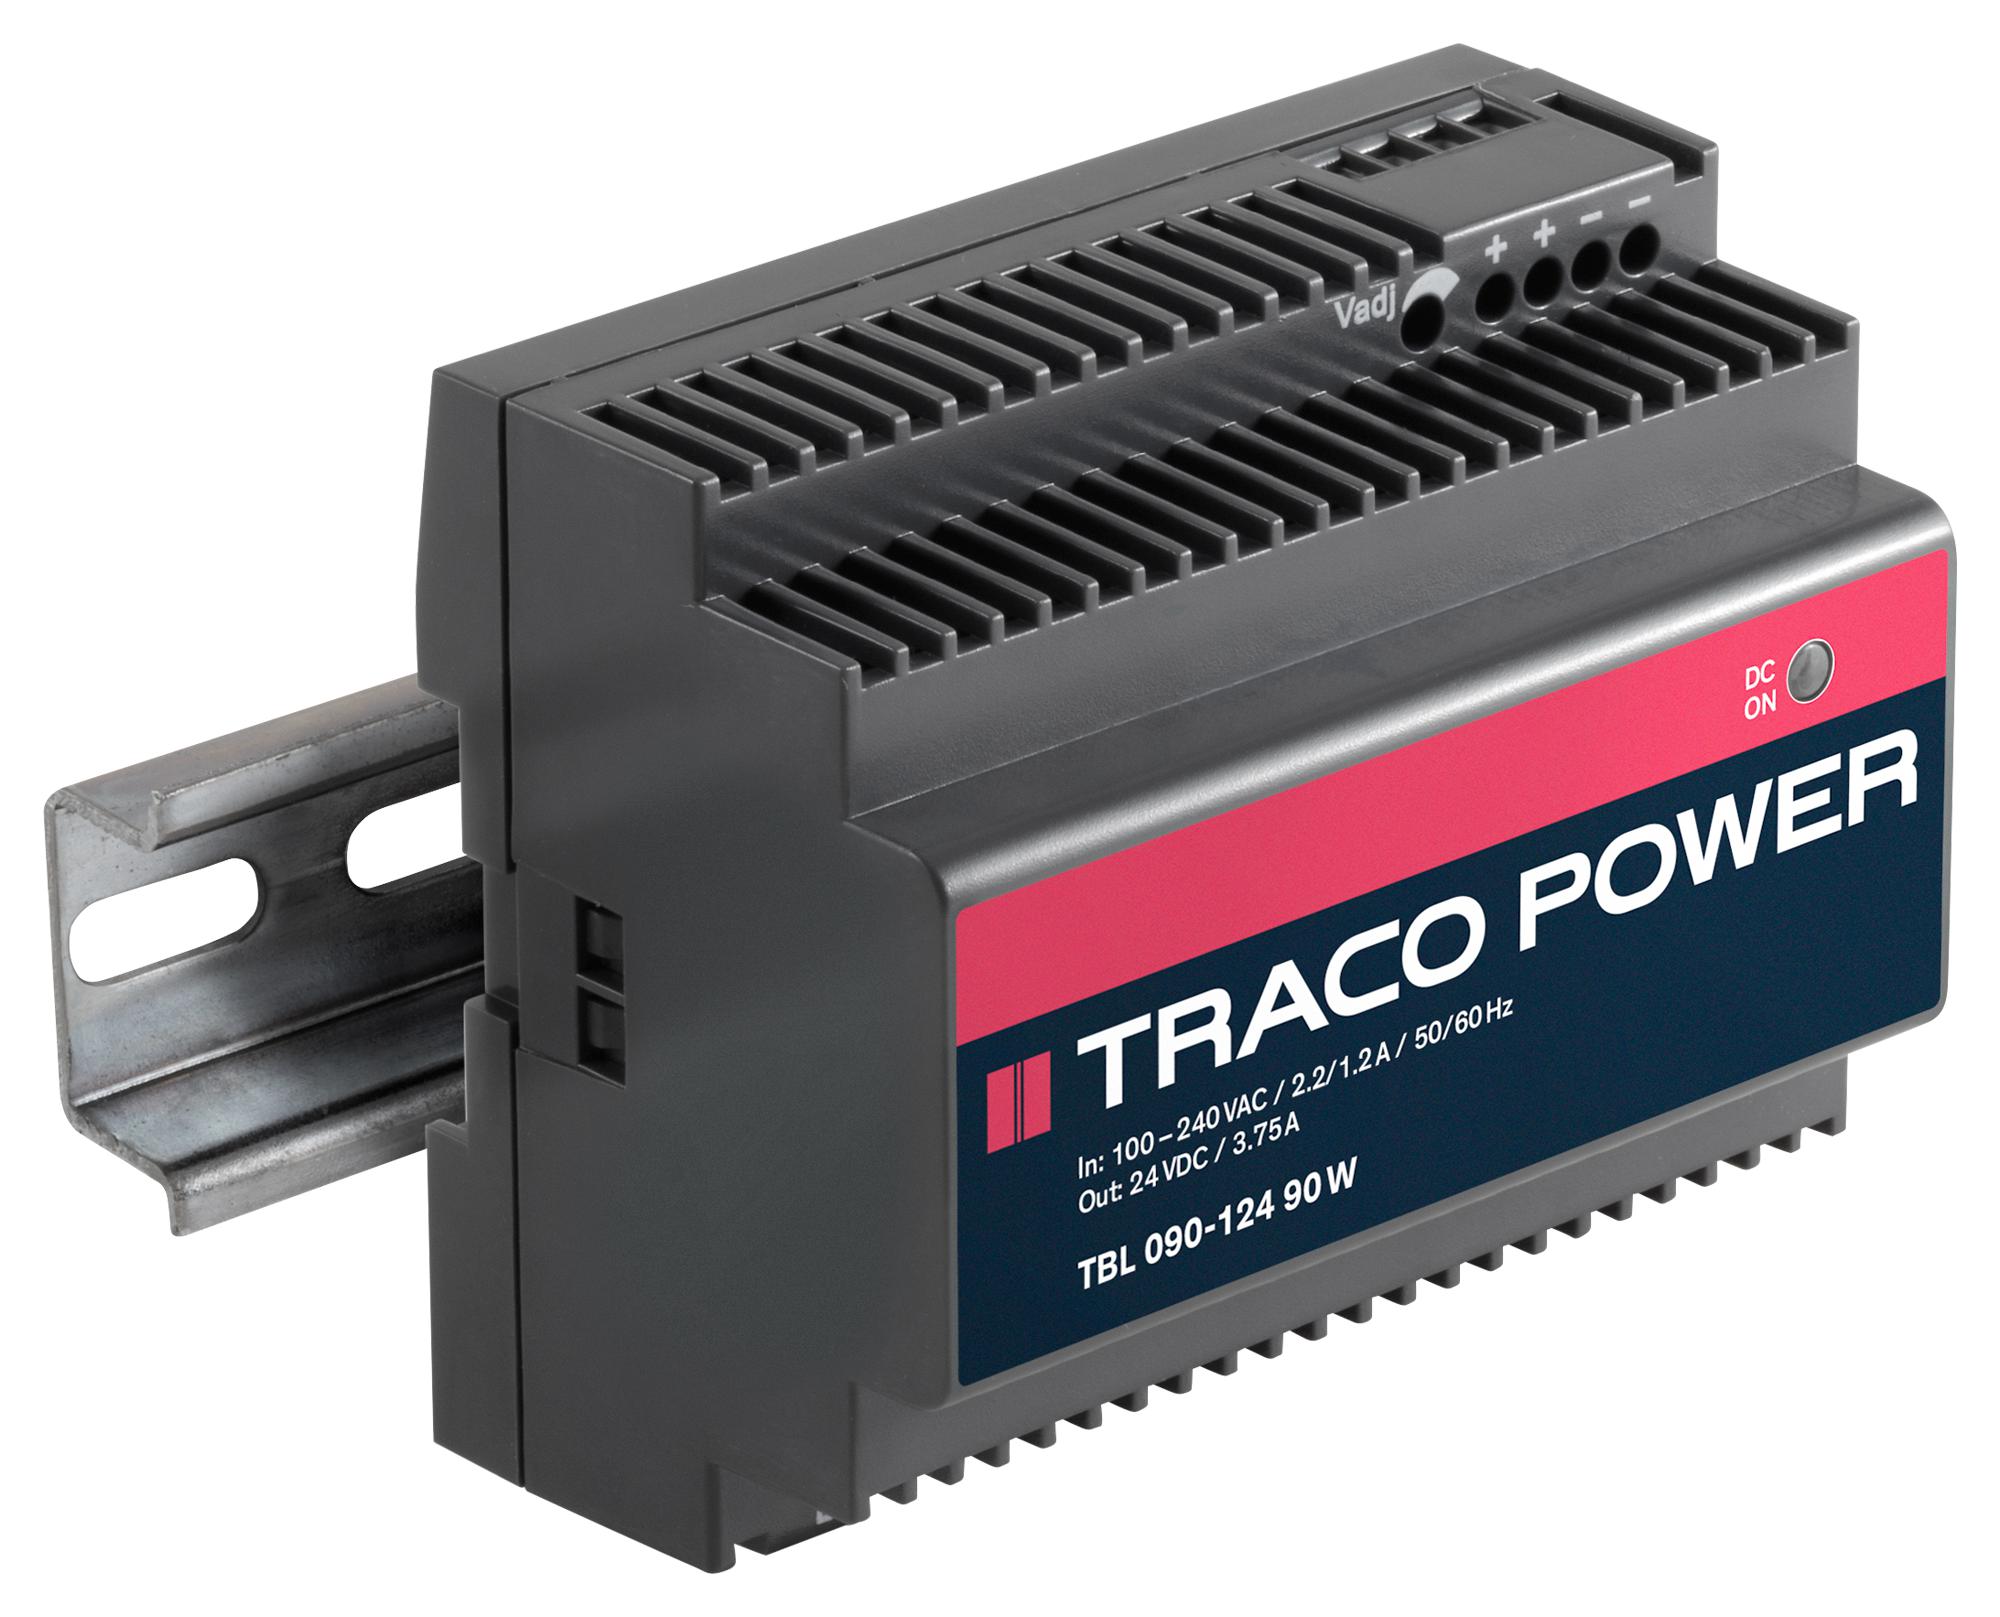 TRACO Power Tbl 090-124 Ac/dc, 24V/3.8A/90W, Din